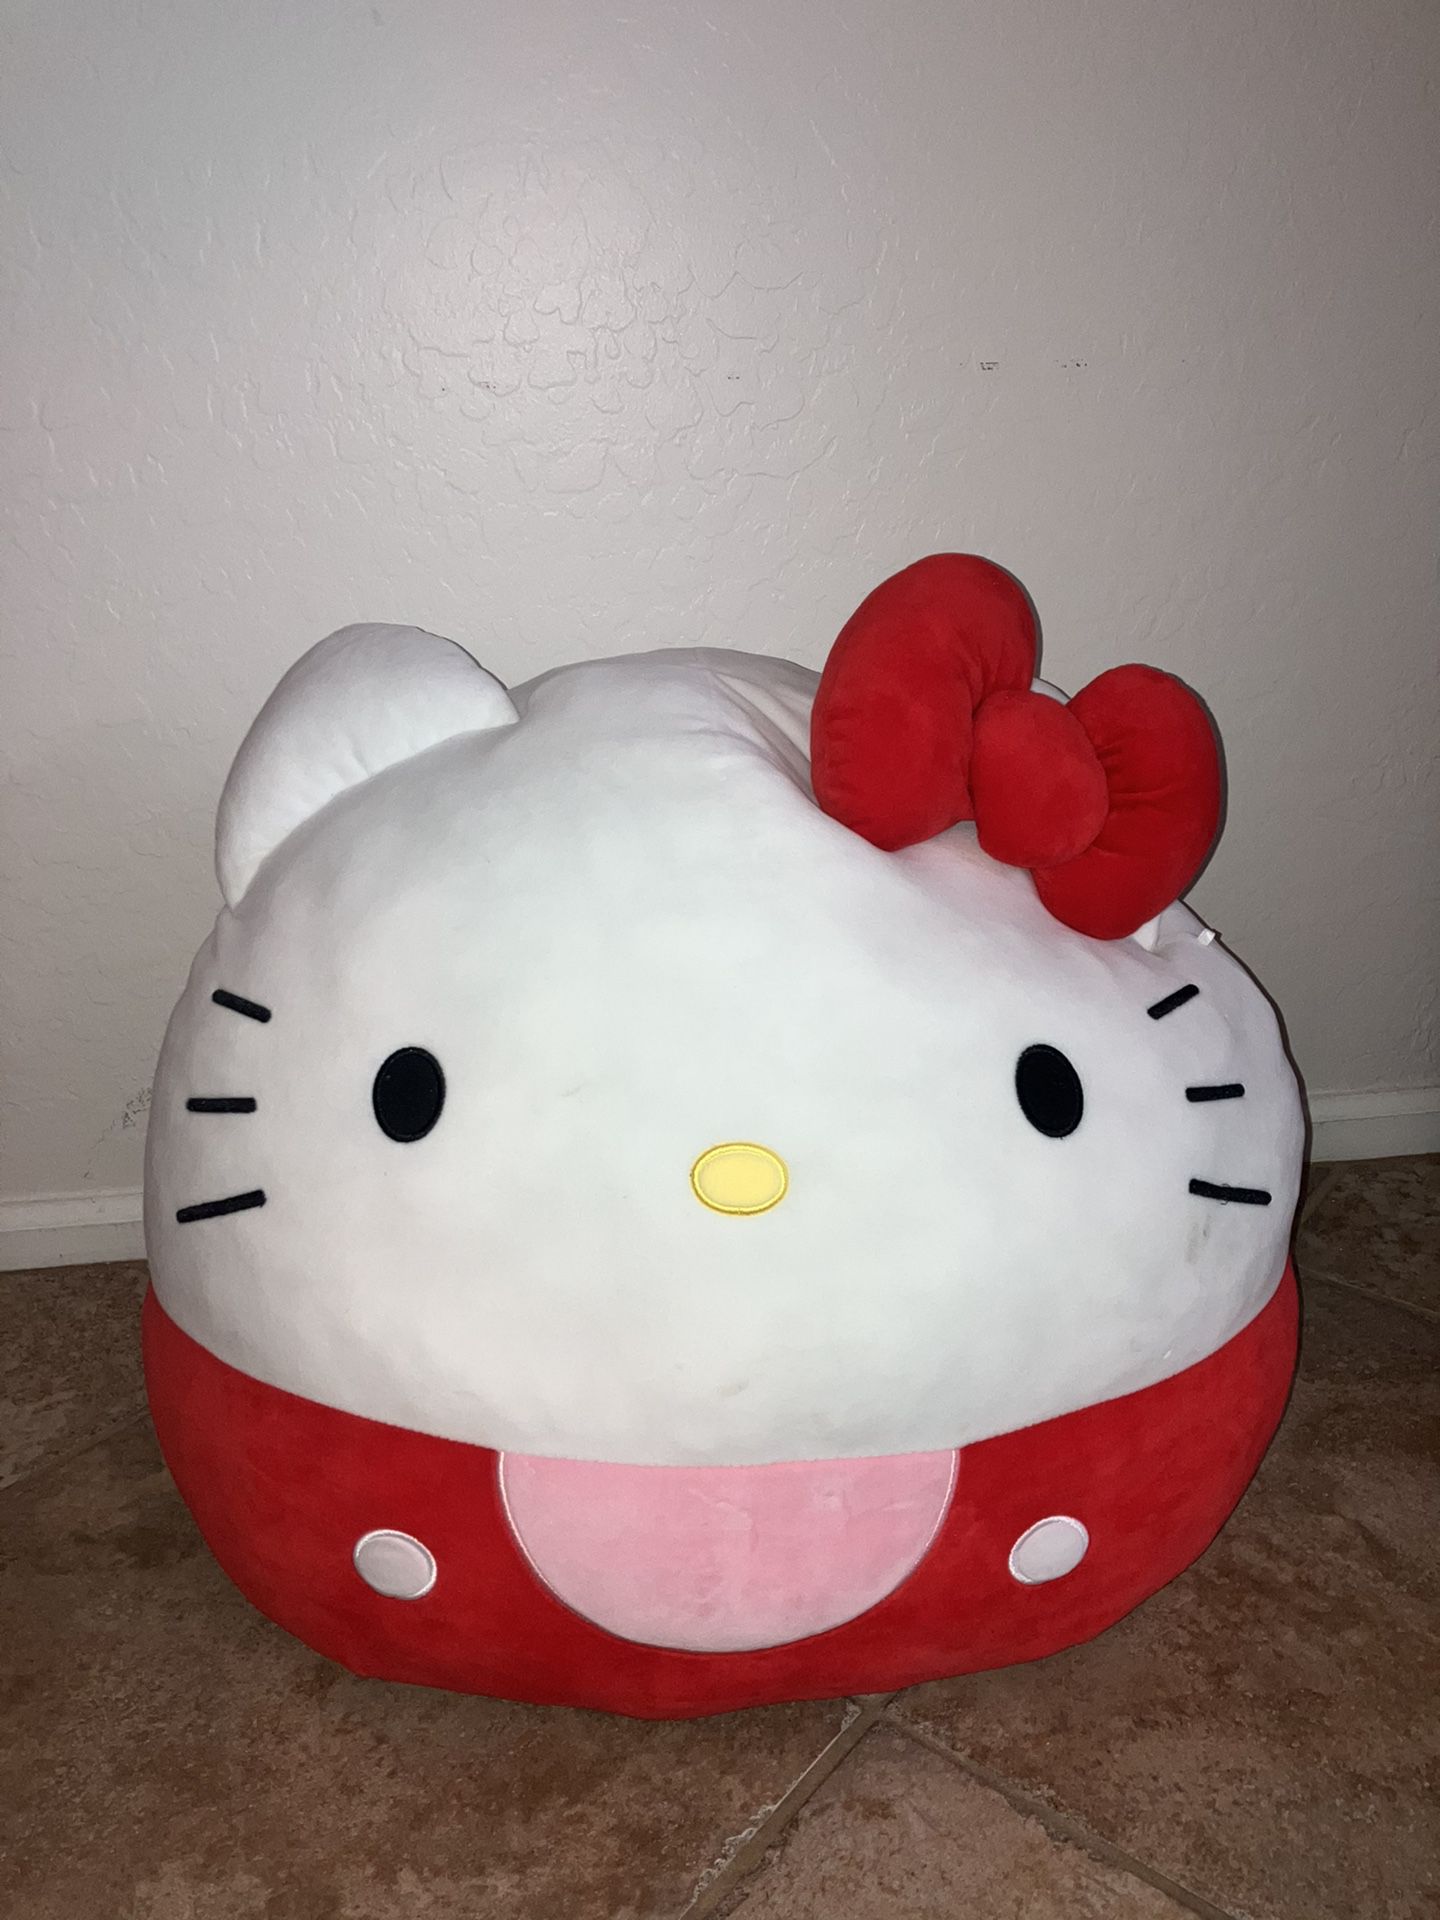 Sanrio Hello Kitty Jumbo Squishmallow 